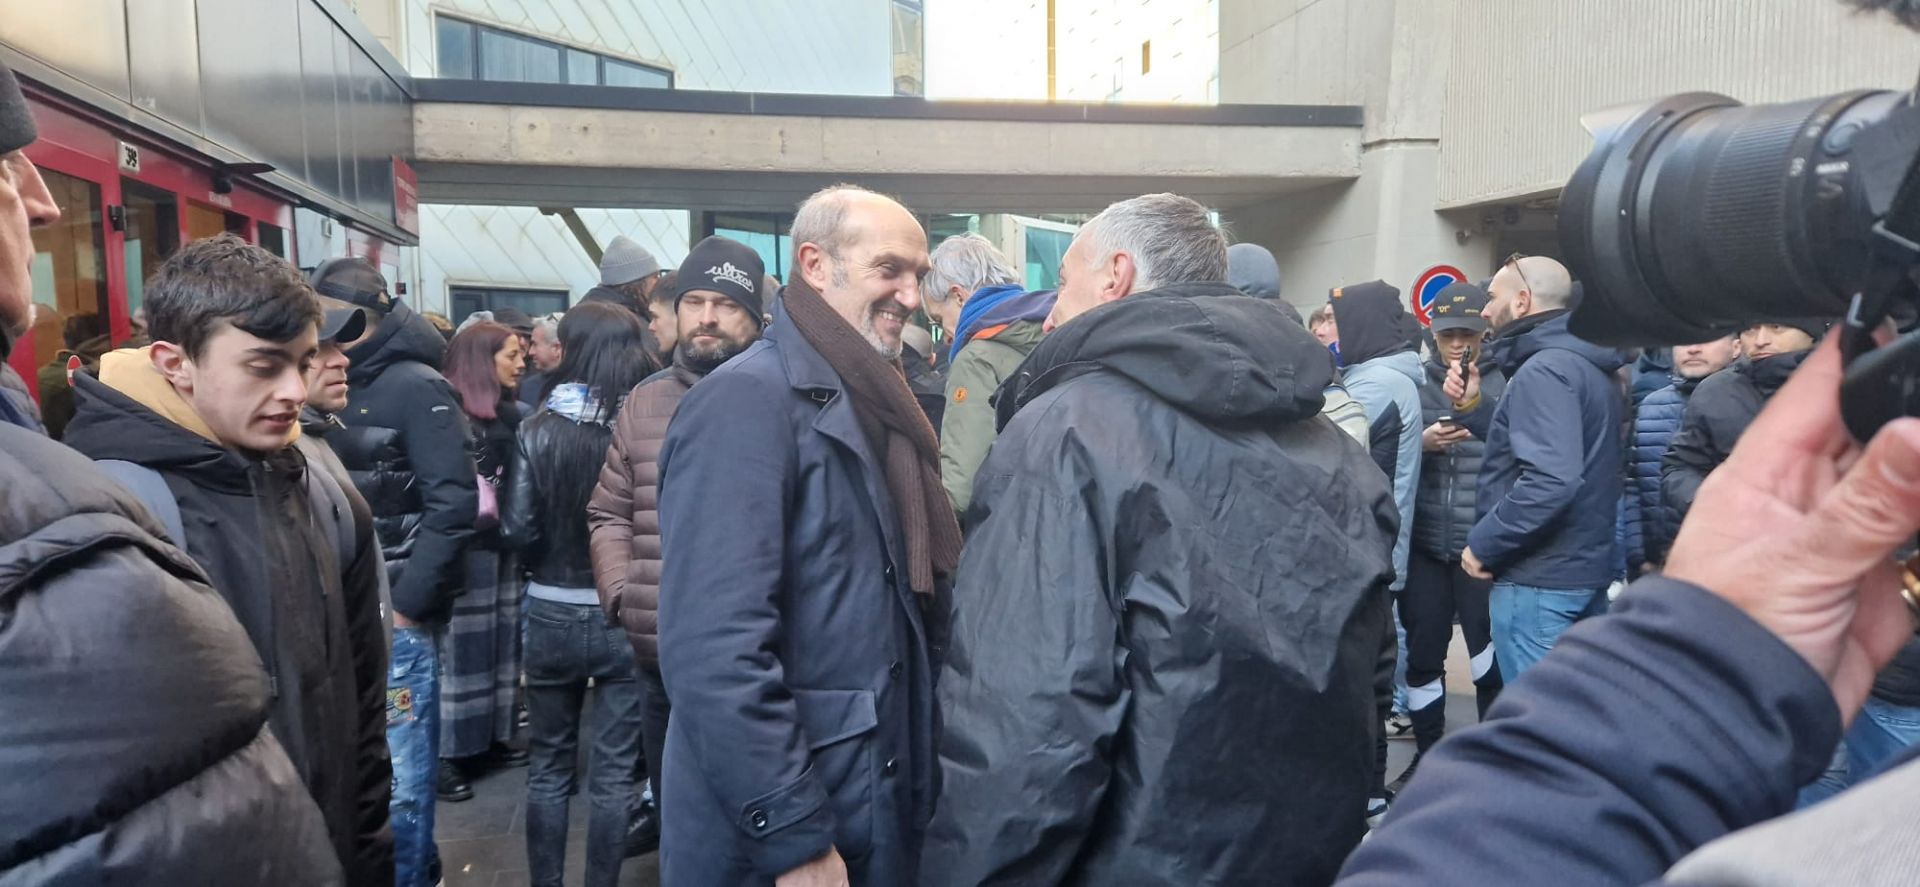 Sampdoria, altra assemblea dei soci nulla: i tifosi manifestano davanti la sede, incontro con Lanna